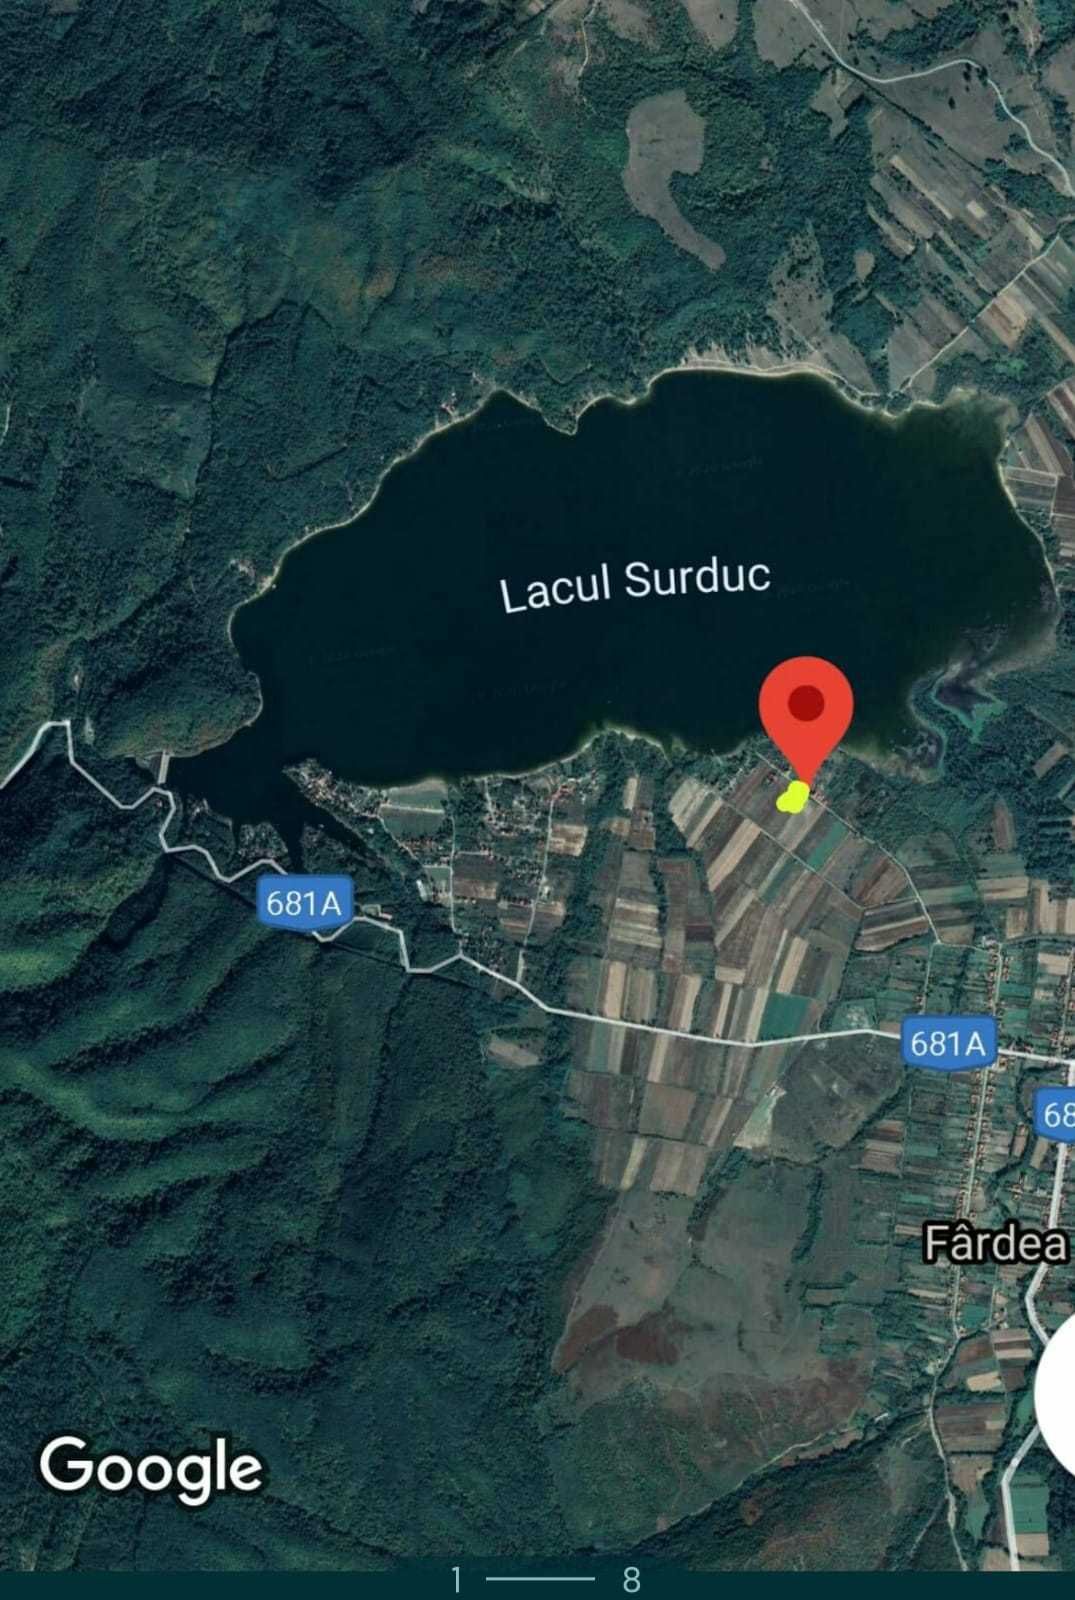 Vand teren intravilan , pe malul lacului Surduc , langa Fardea